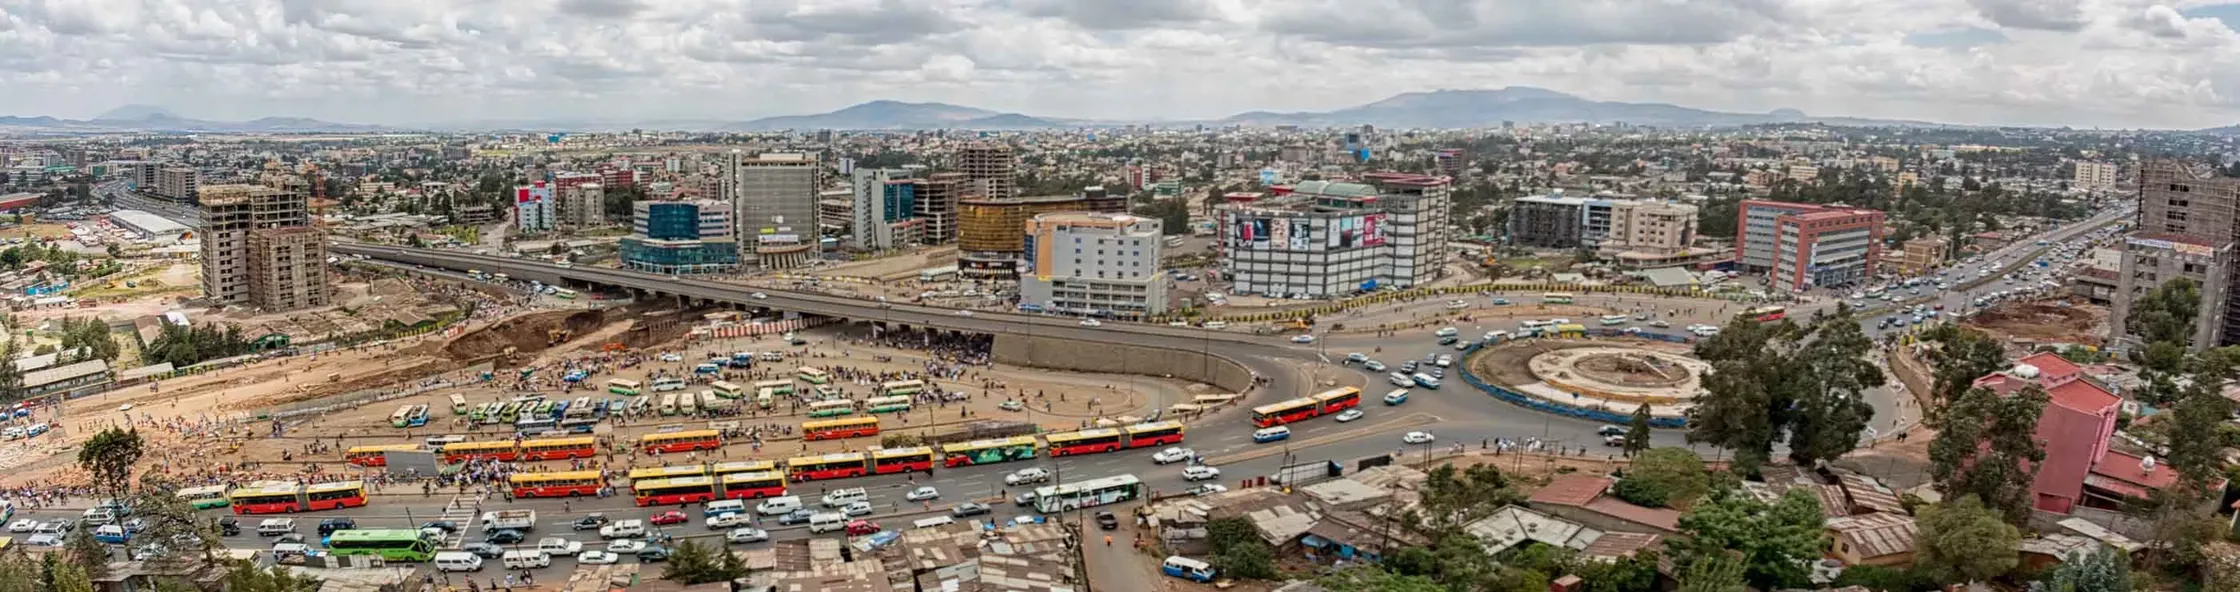 Addis Ababa | Addis Ababa Region, Ethiopia - Rated 5.6